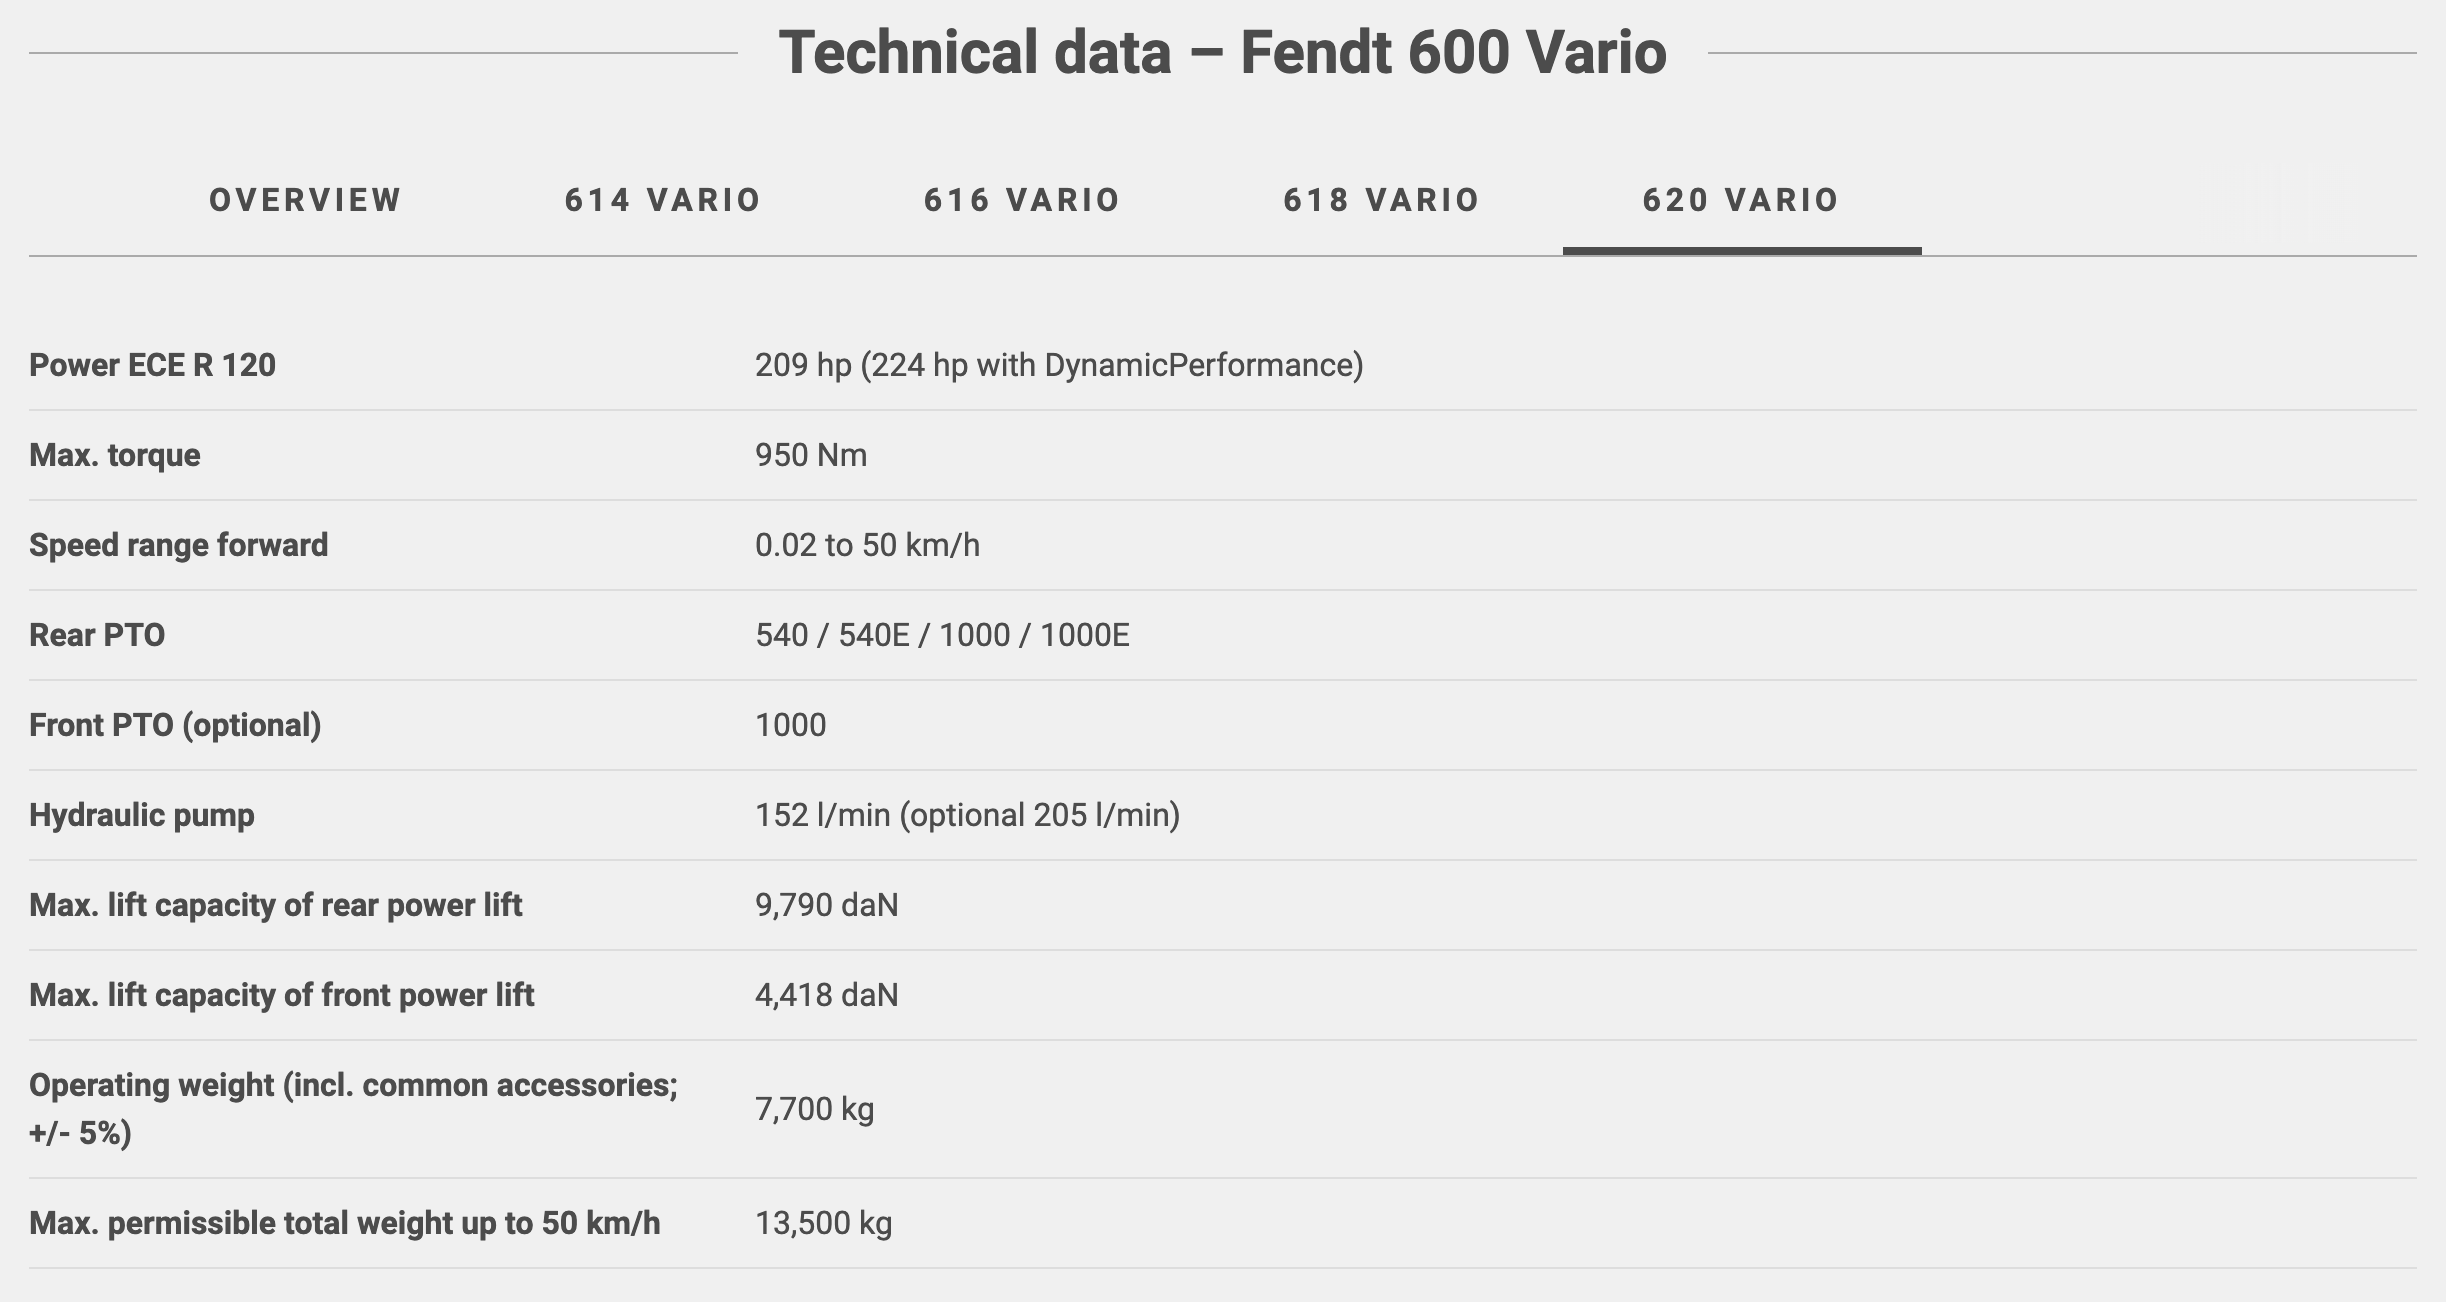 Dados técnicos gerais do Fendt 620 Vario